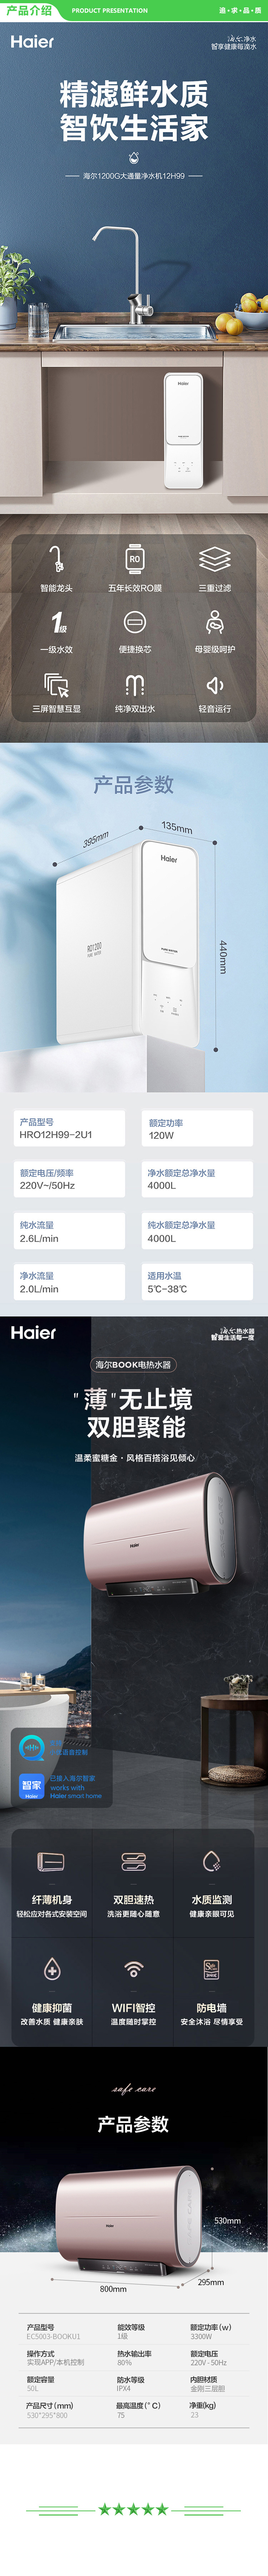 海尔-Haier-EC5003-BOOK(U1)+HRO12H99-2U1-双胆瞬热电热水器+1200G大通量自清洁净水机--.jpg